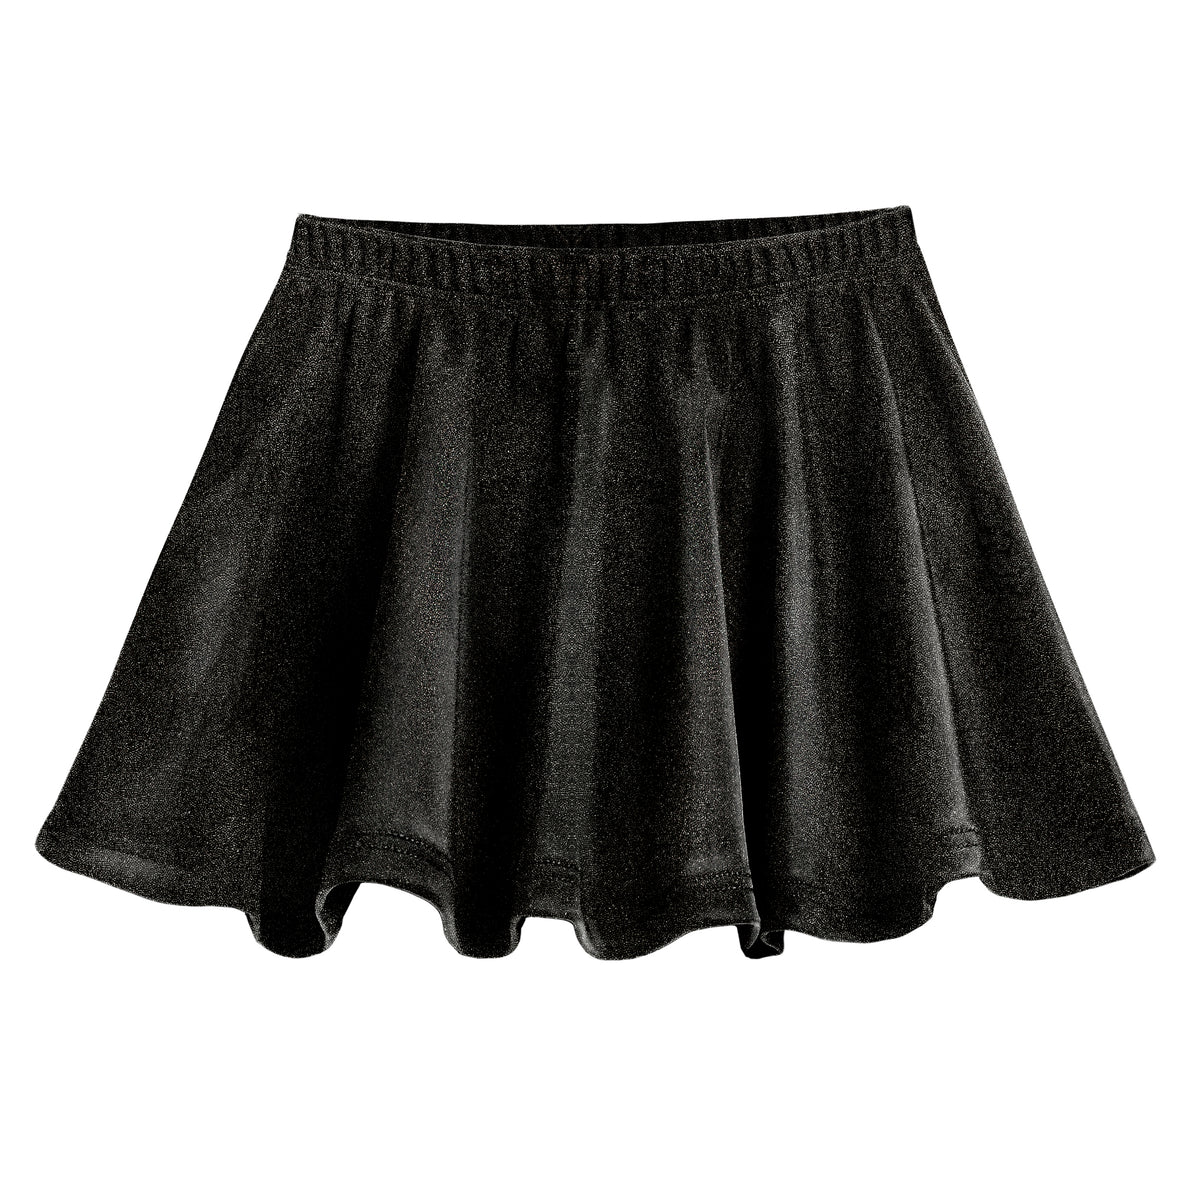 Girls Novelty Circle Skirt | Black Sparkly Shimmer